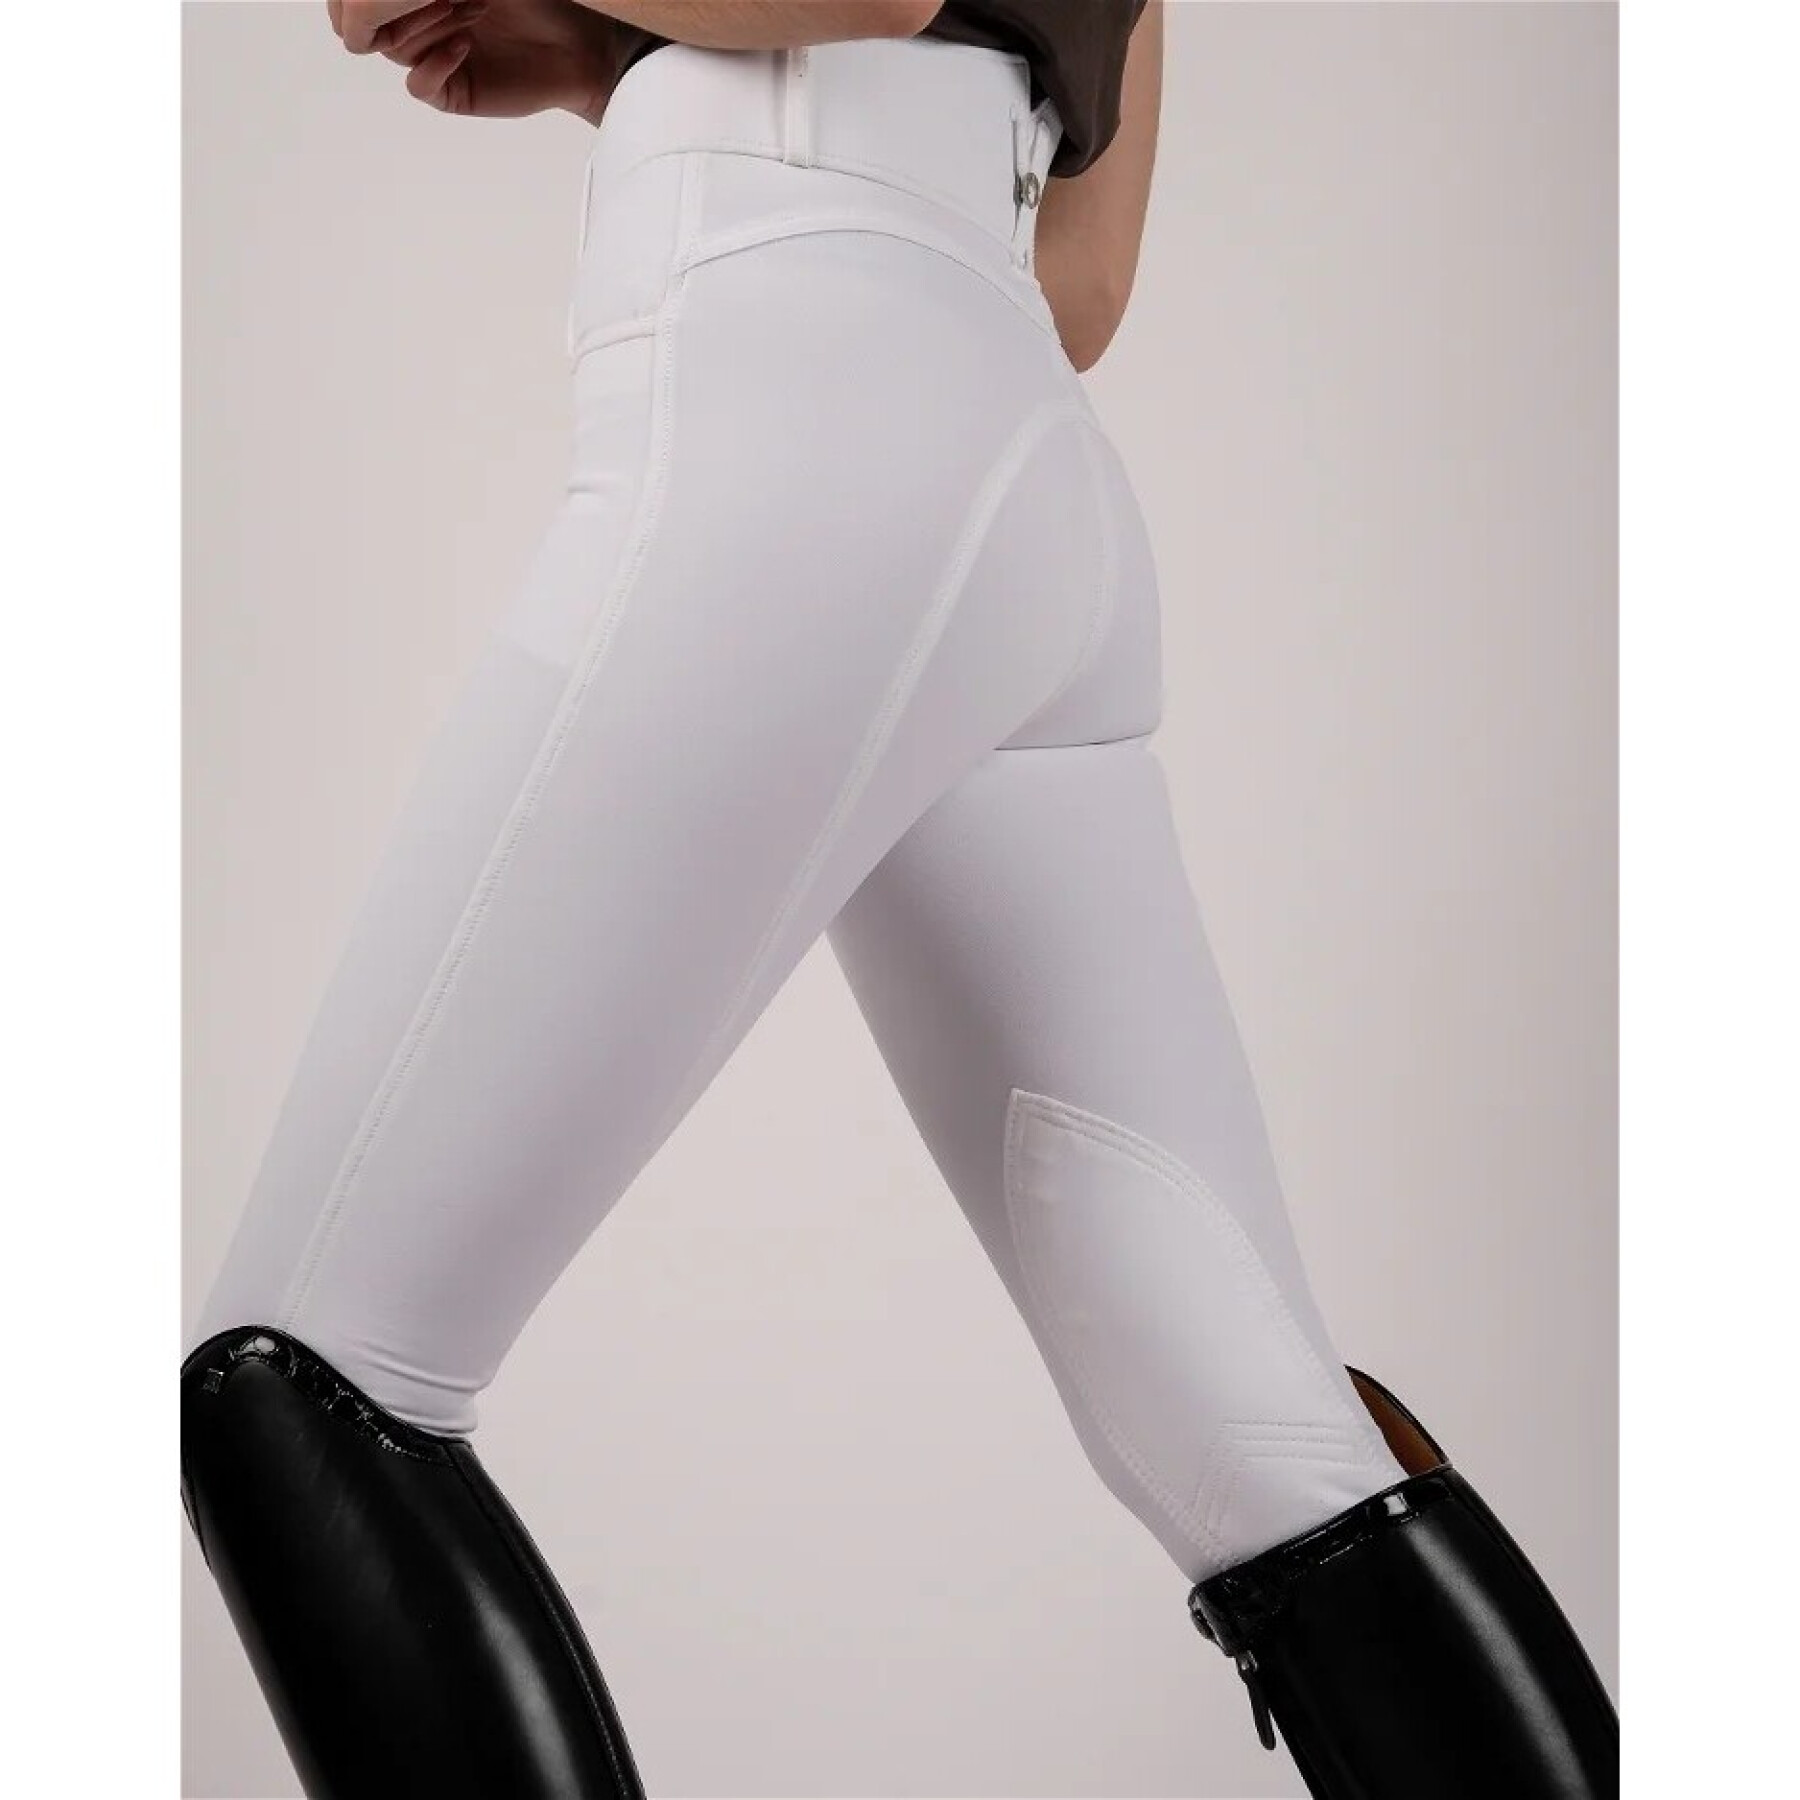 Pantalon équitation Mid grip femme Montar Essential Megan Vol 2